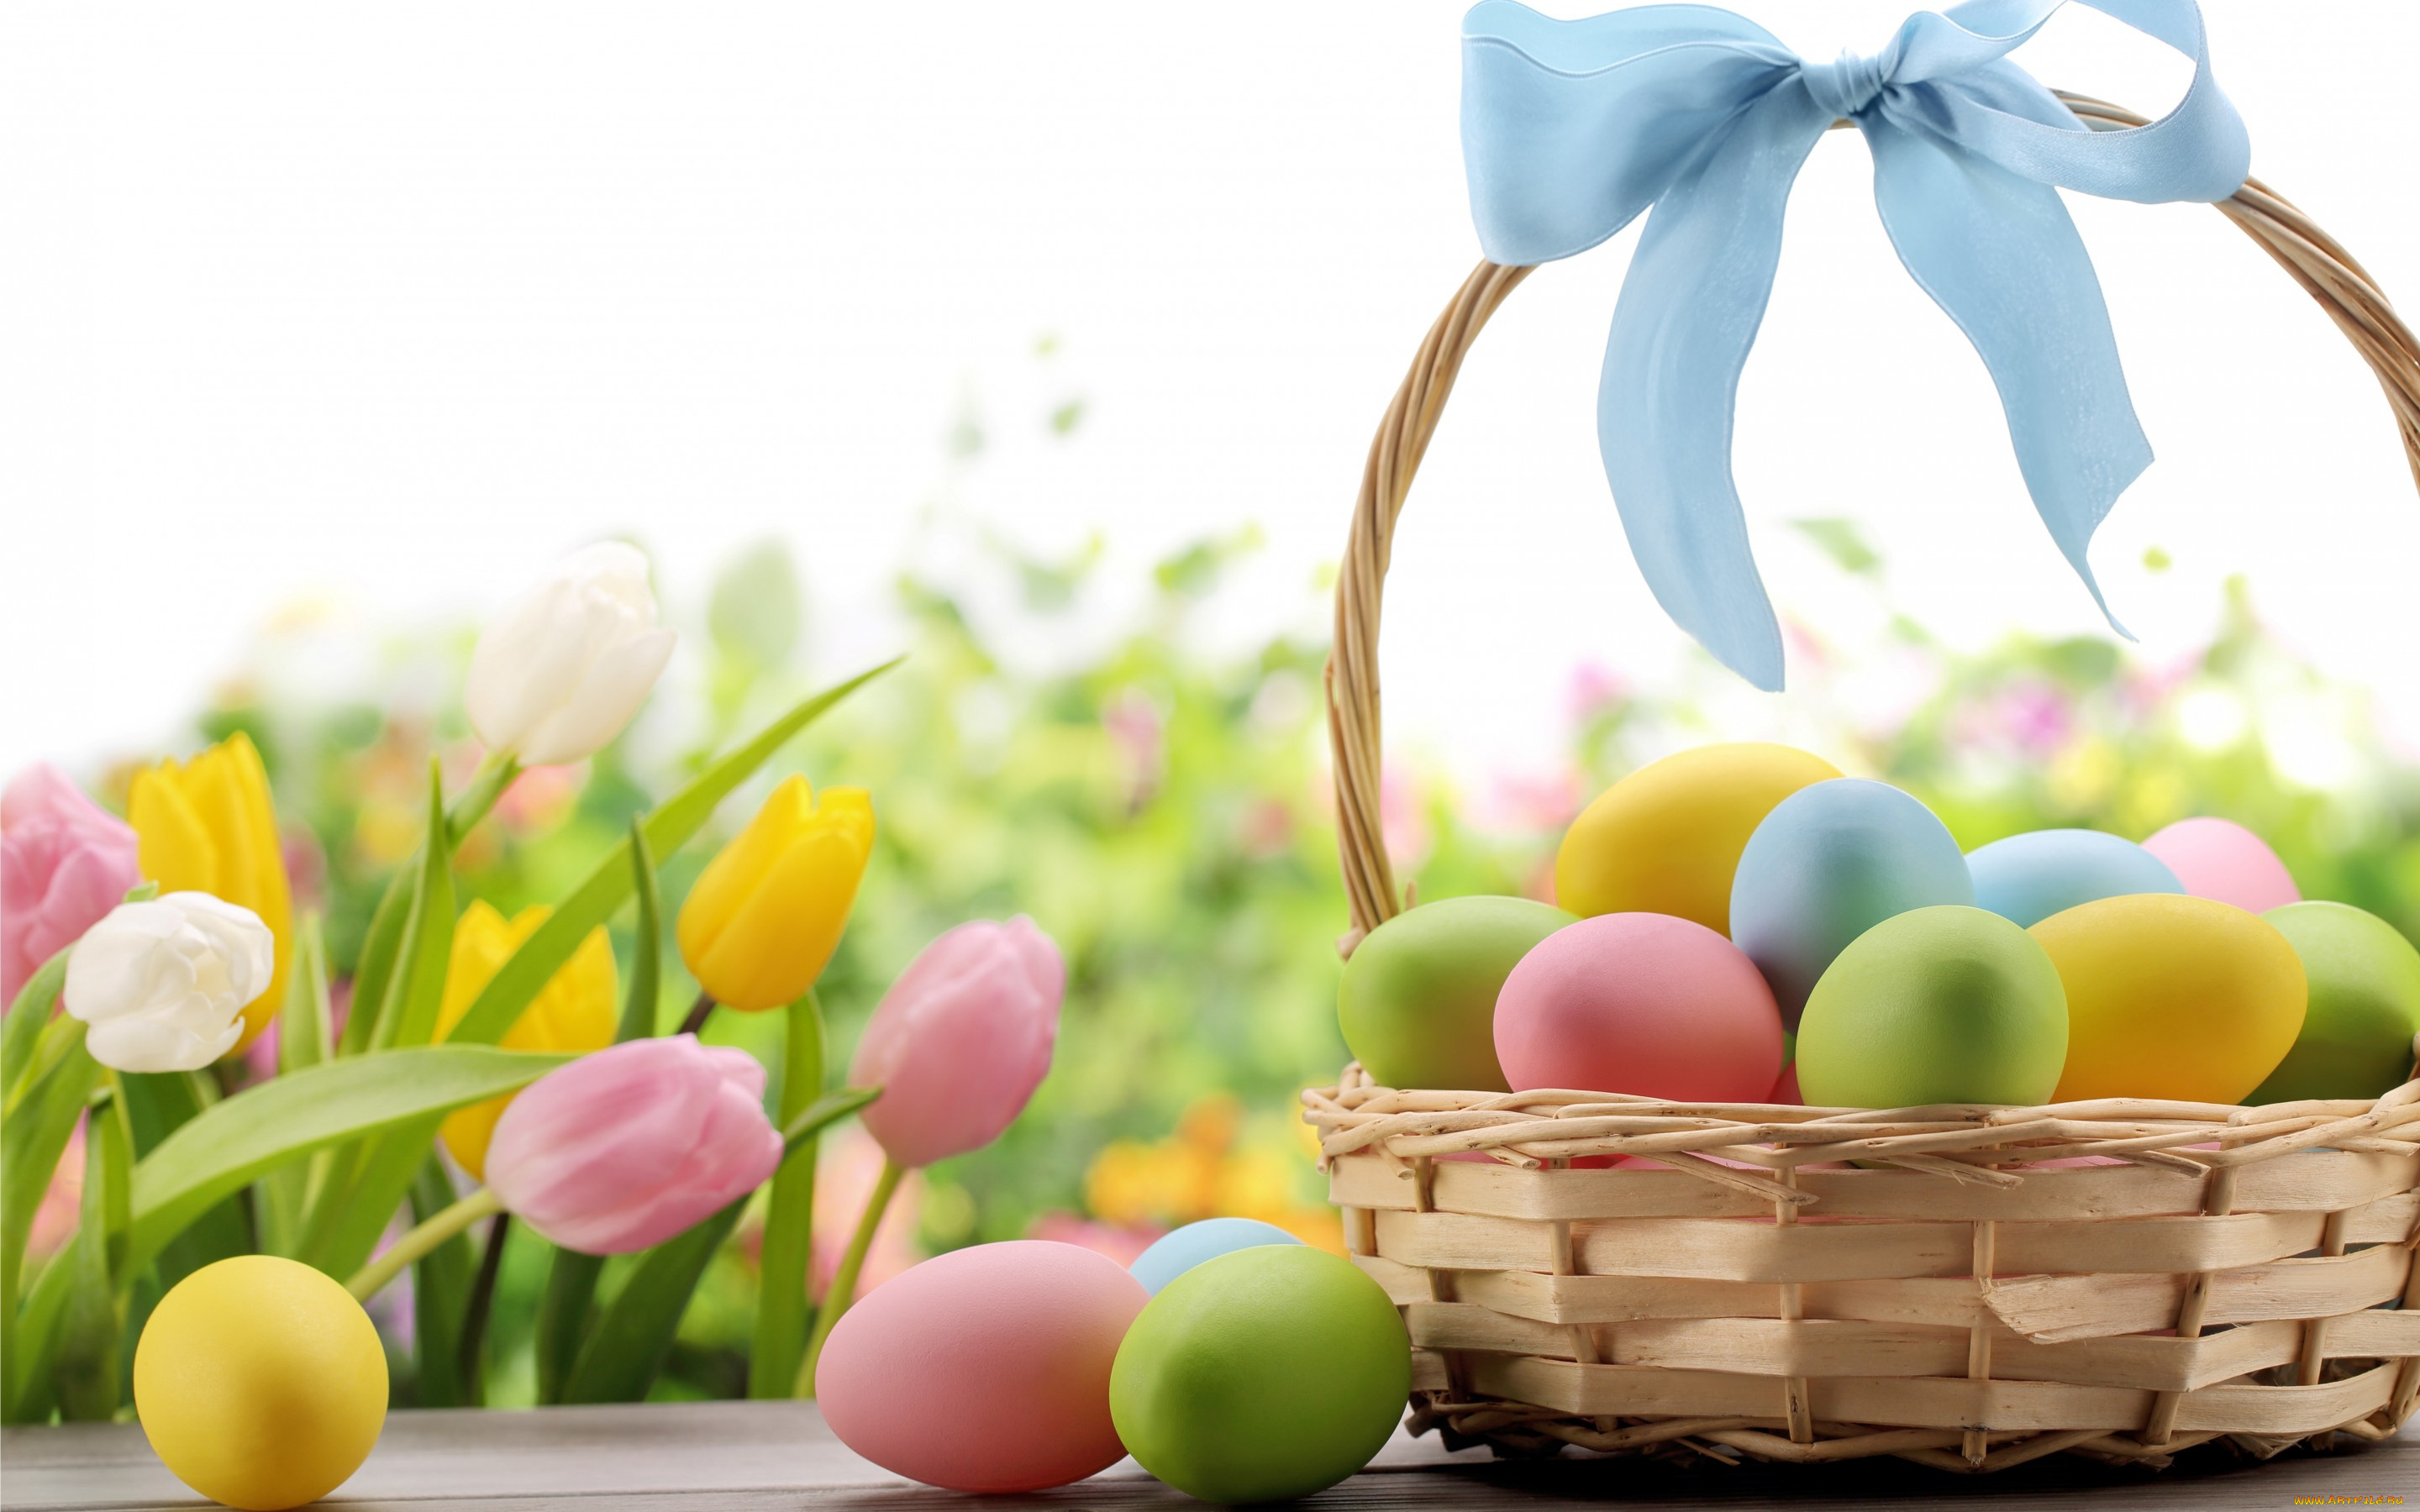 праздничные, пасха, spring, eggs, easter, яйца, flowers, тюльпаны, цветы, бант, лента, корзина